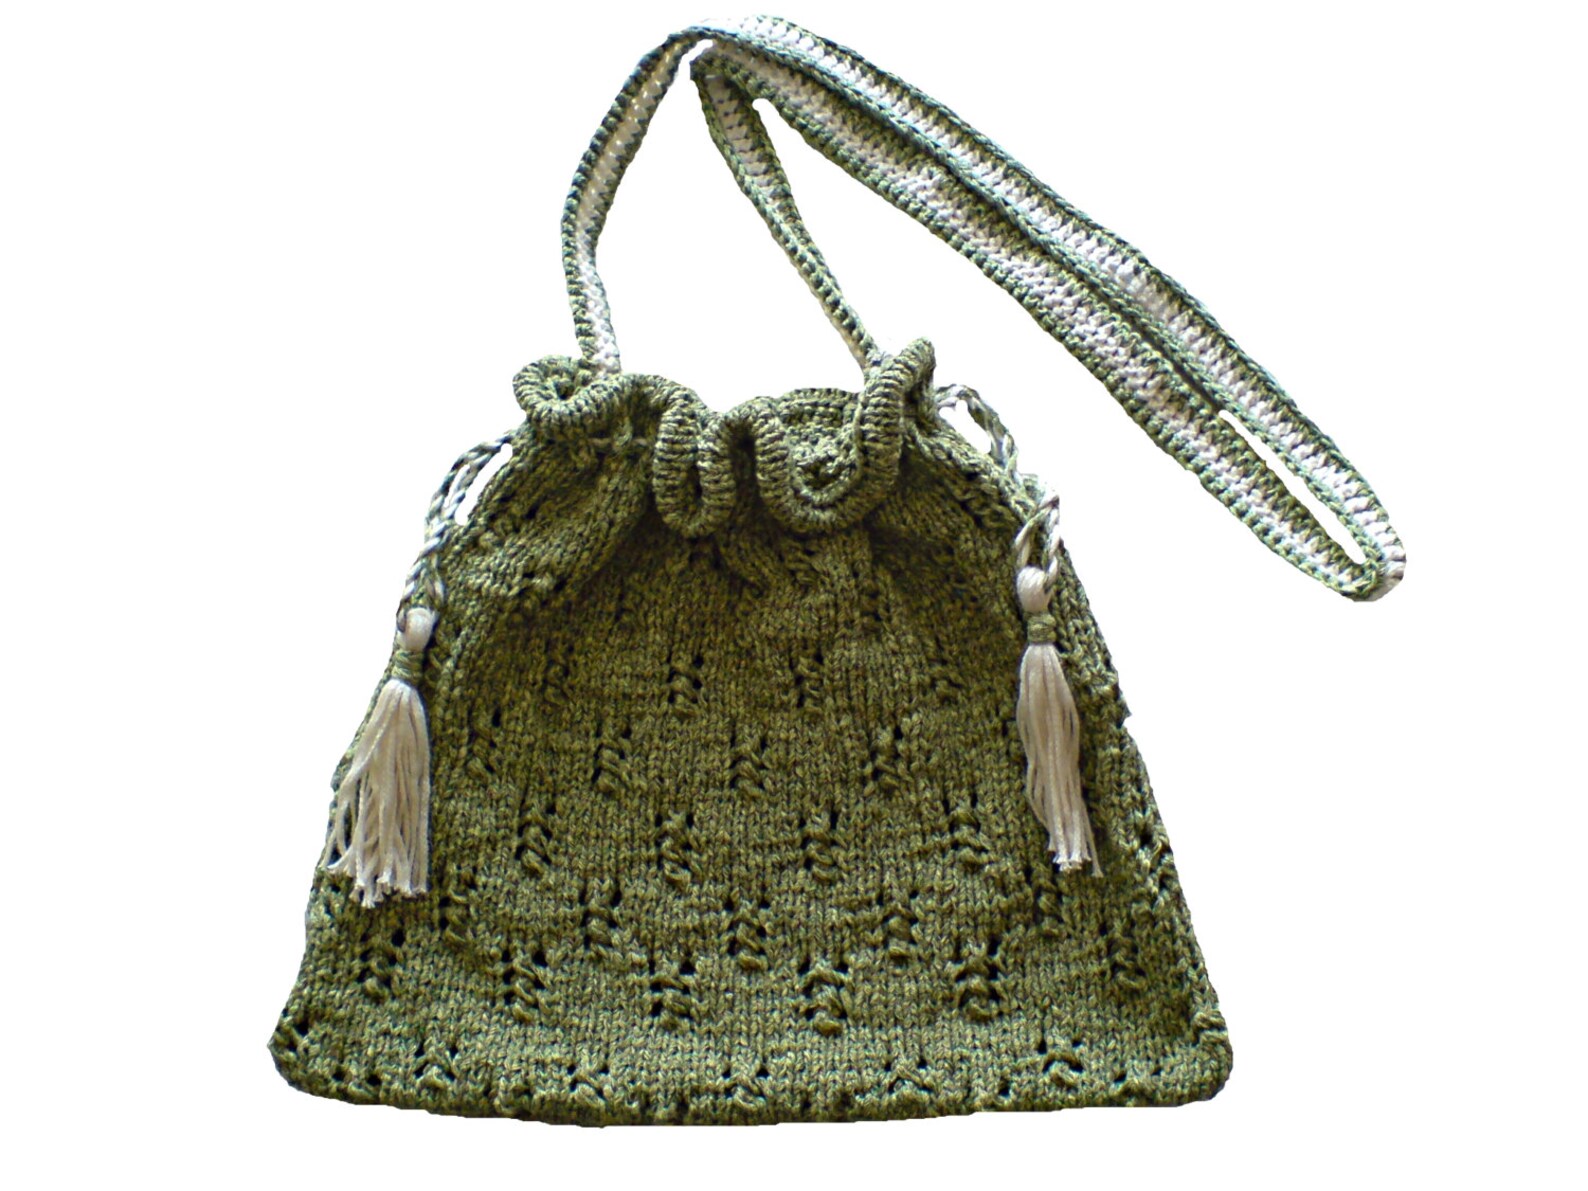 Women's Bag Purse Shoulder Bag Hand Bag With Knit - Etsy